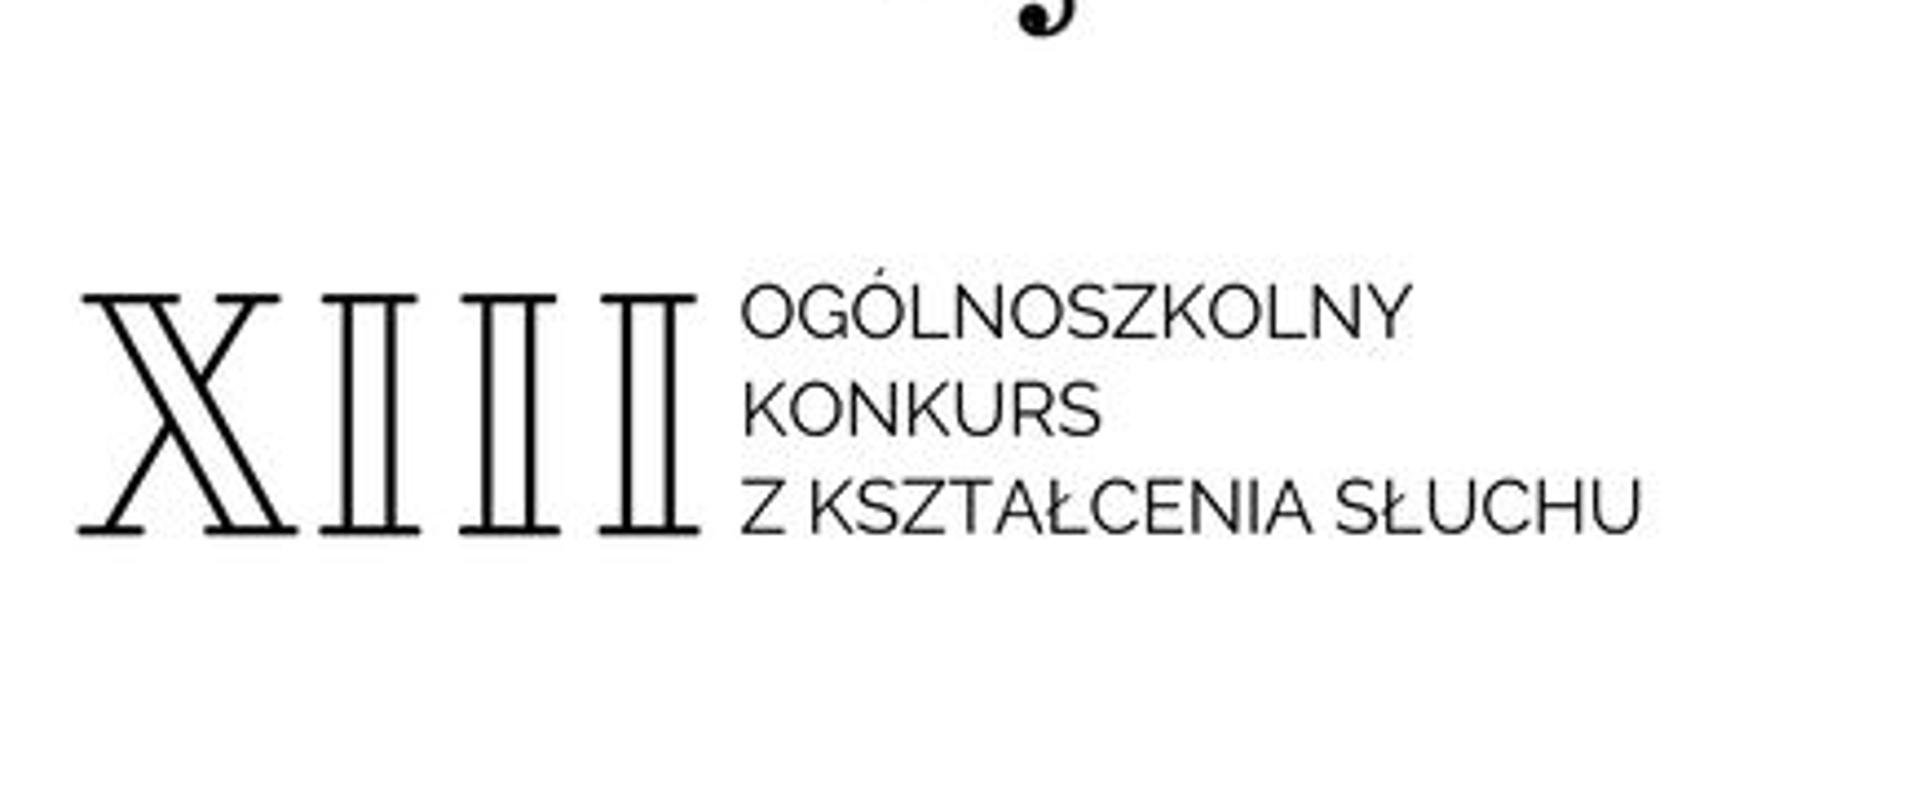 na białym tle napis XIII Ogólnopolski konkurs z kształcenia słuchu etap I 7 marca, etap II 13 marca, grafika nutki i logo szkoły